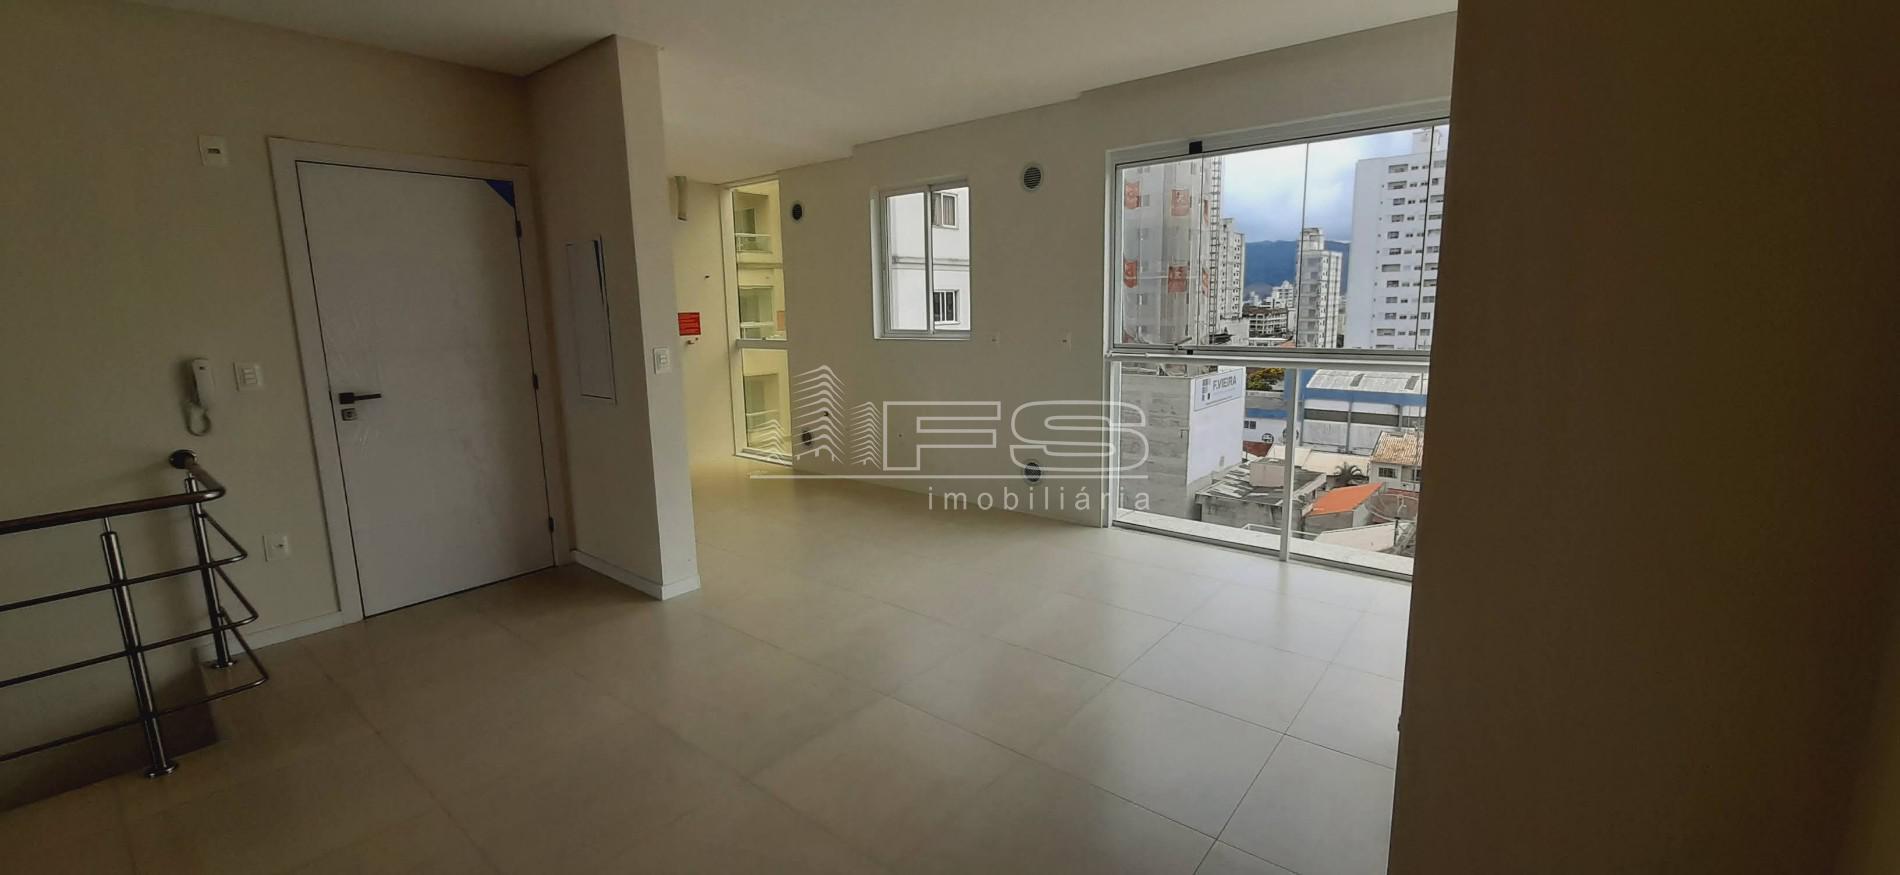 Apartamento com 3 Dormitórios à venda, 137 m² por R$ 975.800,00